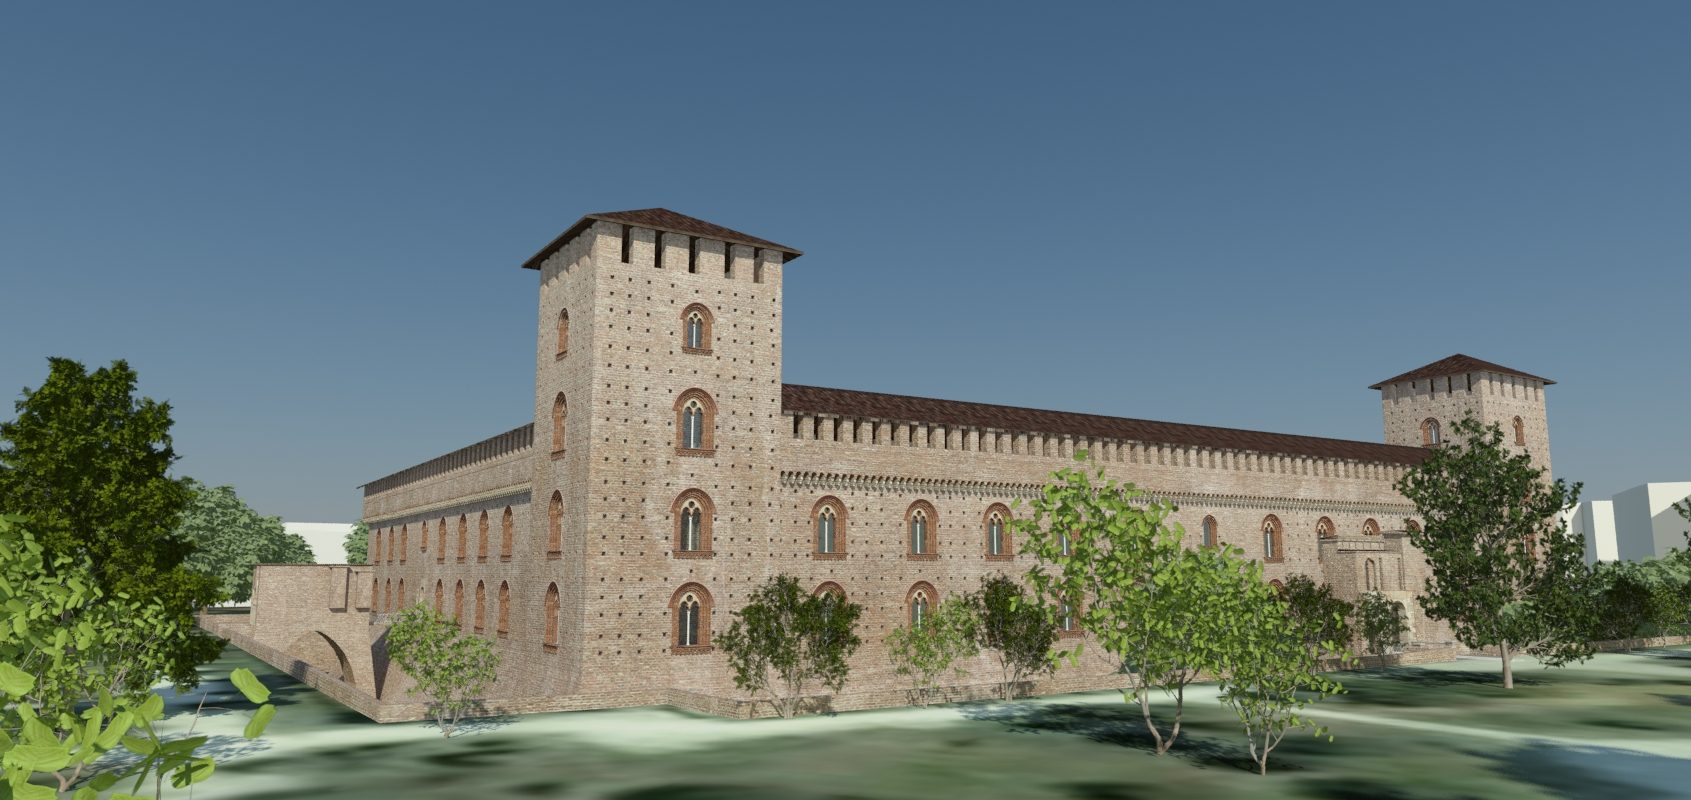 Permalink to: Pavia – Castello – Simulazione diurna